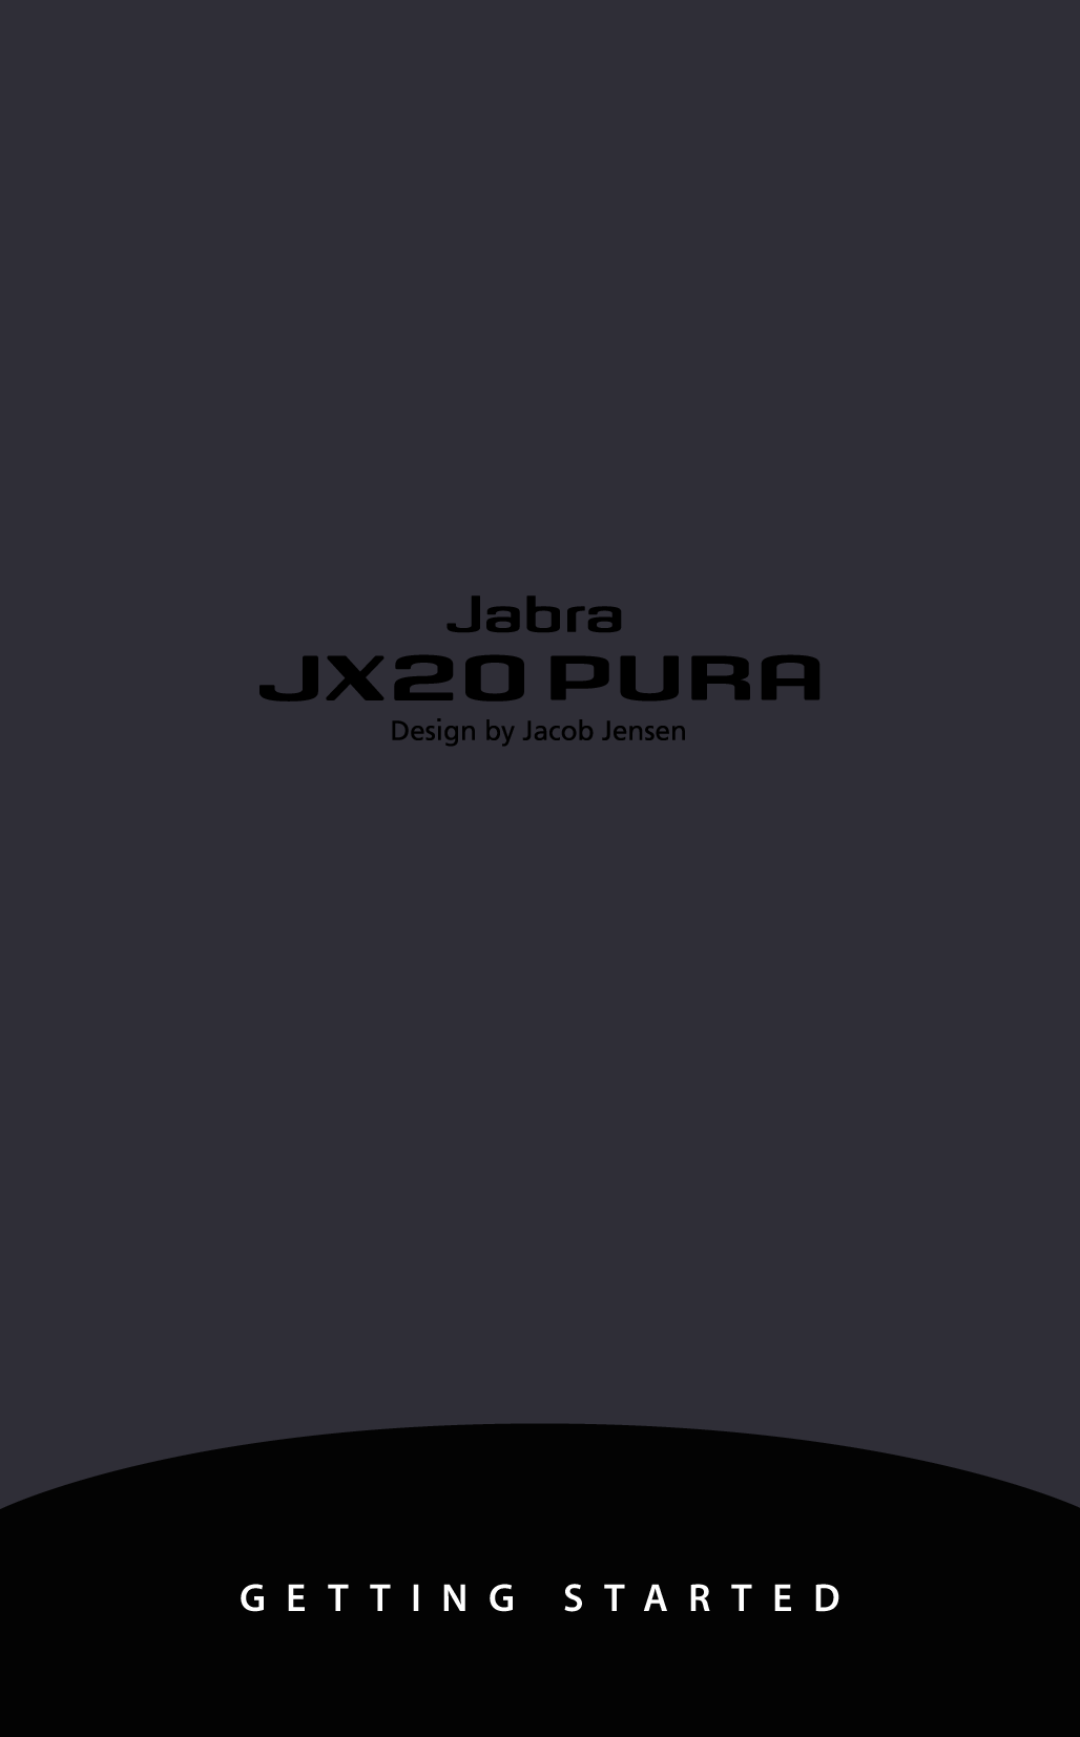 Jabra JX20 manual 